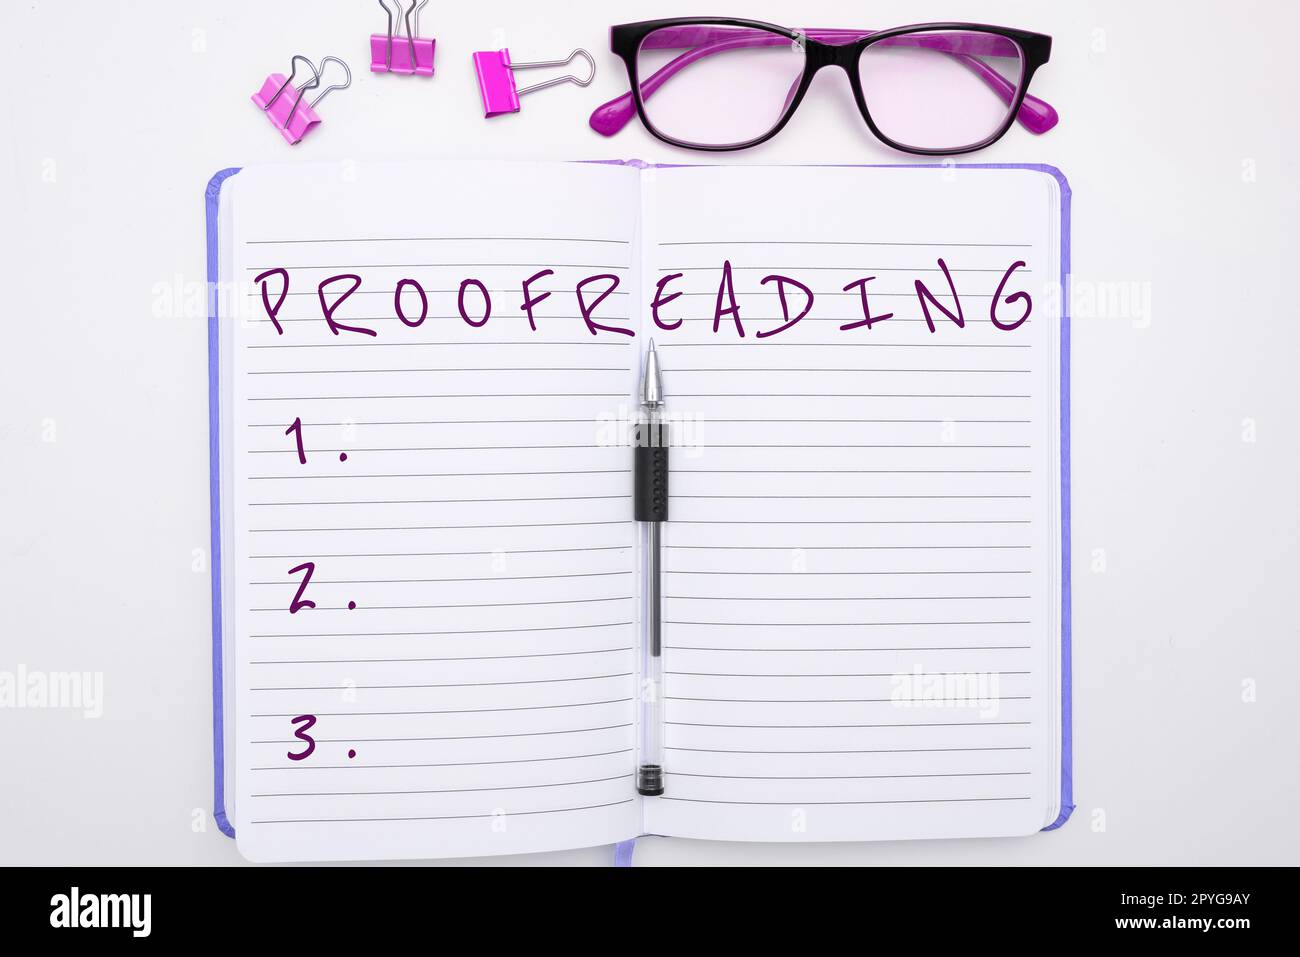 Konzeptionelle Anzeige Proofreading. Wort für das Lesen und Markieren von Rechtschreibfehlern, Grammatik- und Syntaxfehlern Stockfoto